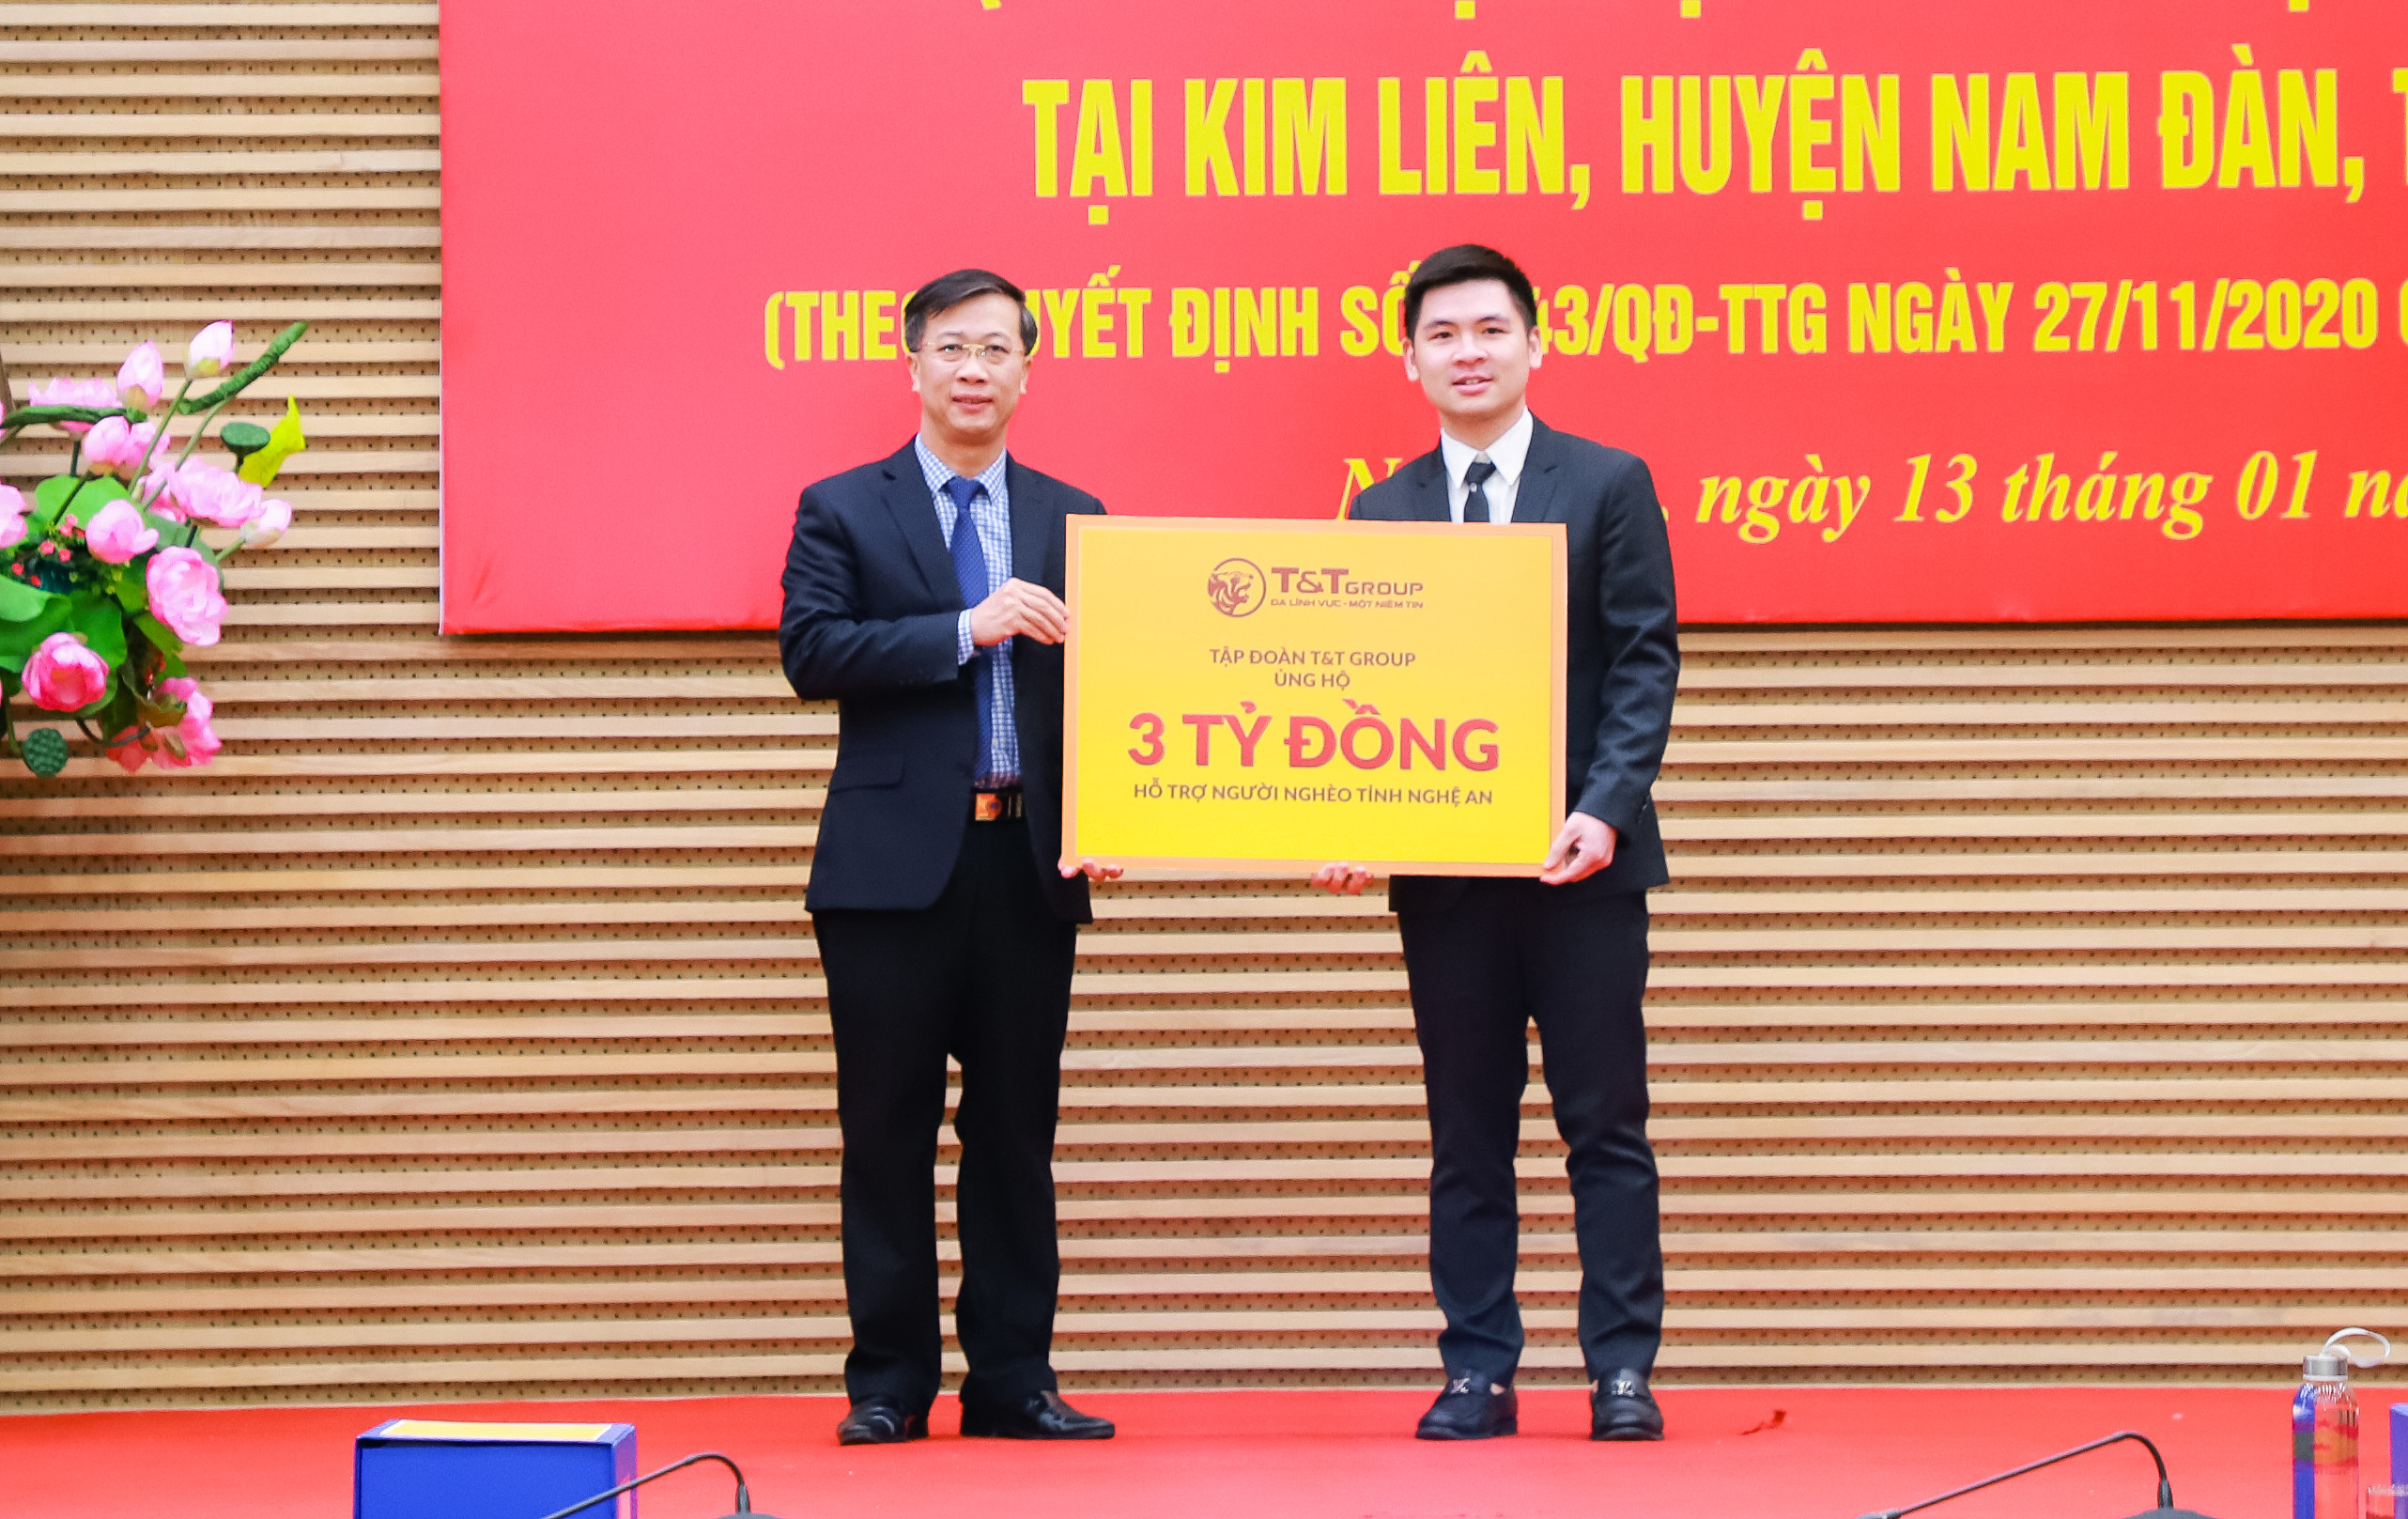 Tập đoàn T&T trao 3 tỷ đồng ủng hộ quỹ vì người nghèo của tỉnh Nghệ An. Ảnh: Thành Duy